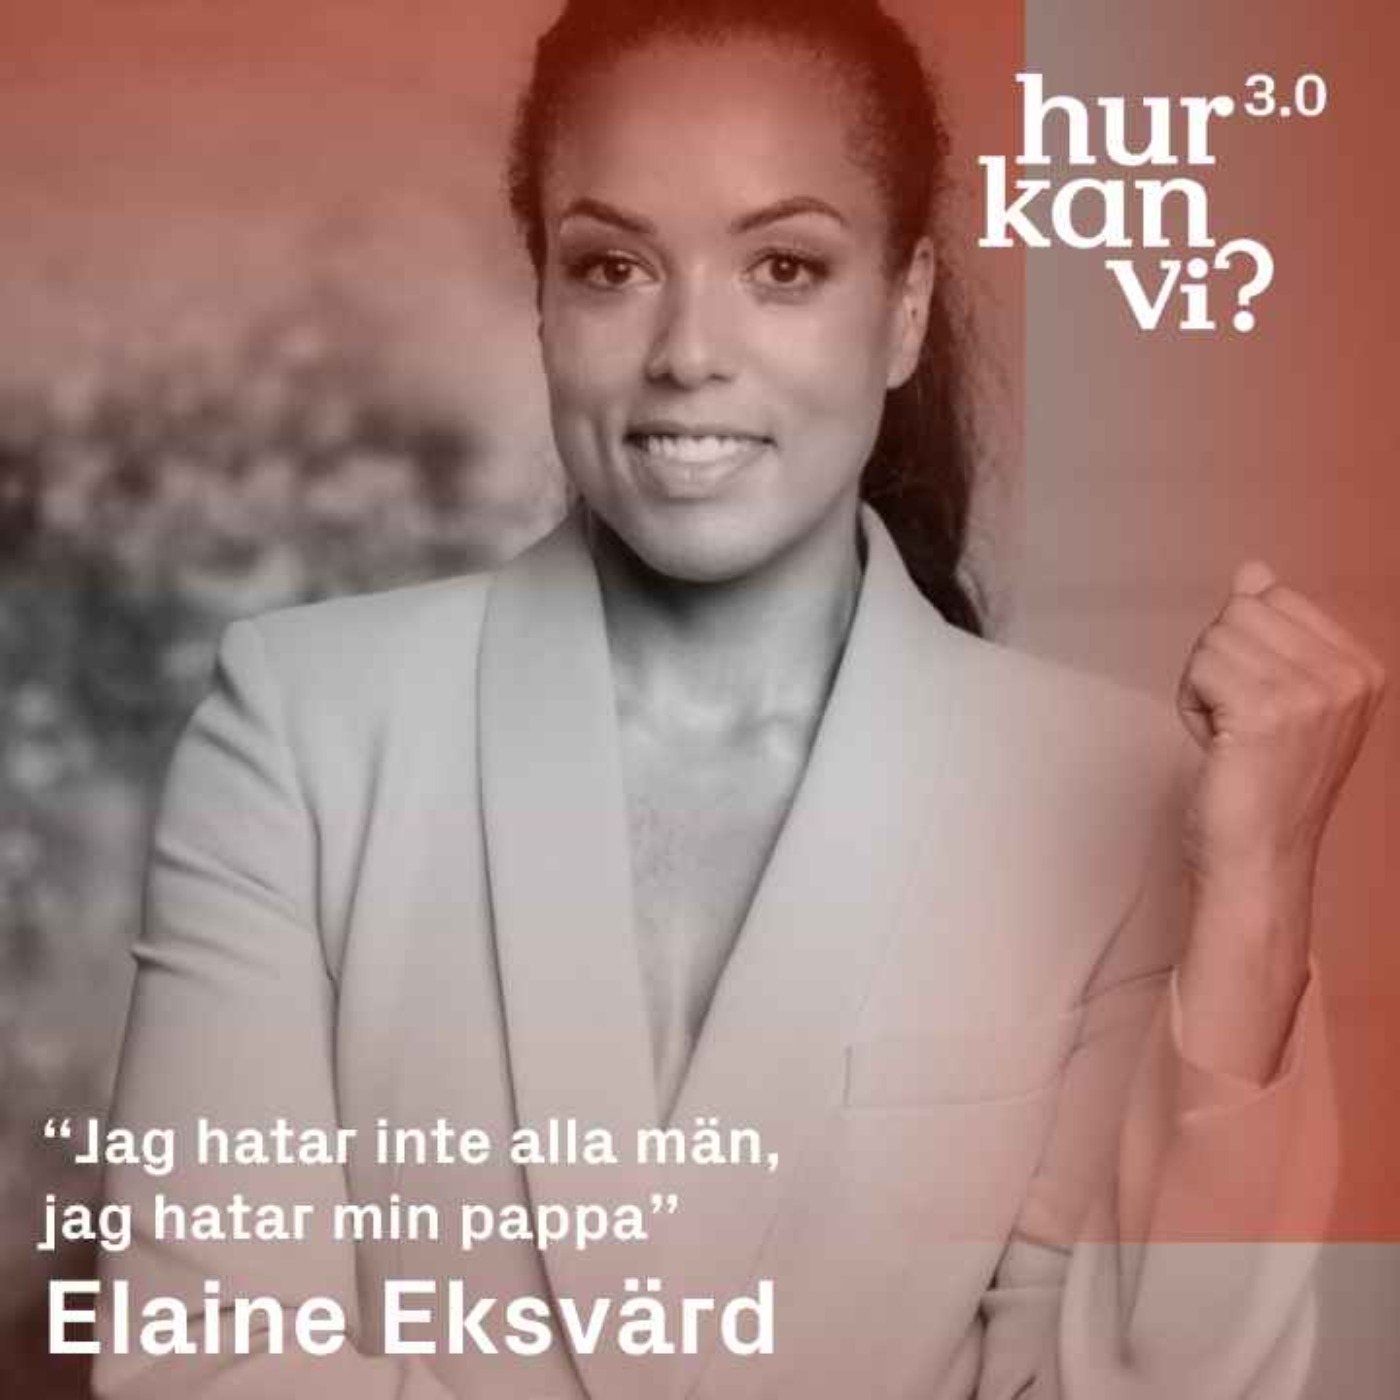 Elaine Eksvärd - “Jag hatar inte alla män, jag hatar min pappa”